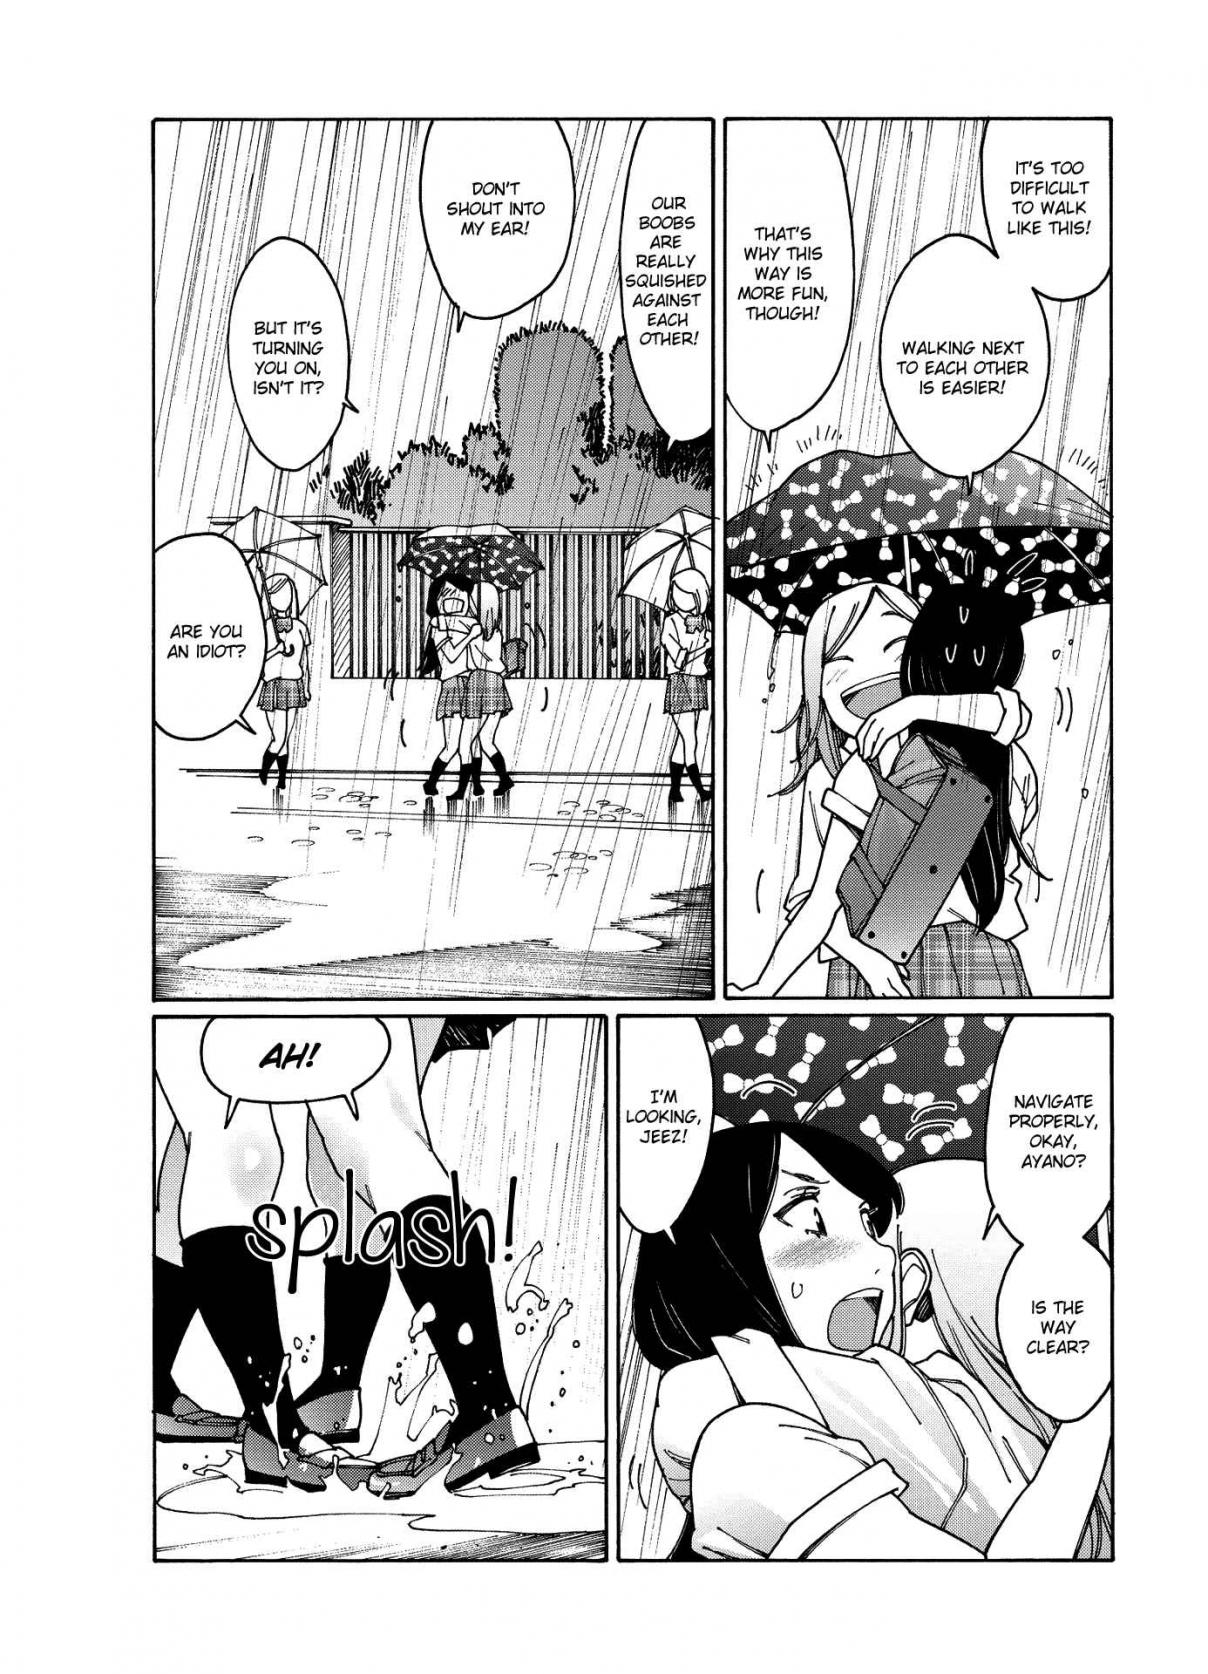 Otome no Teikoku Vol. 7 Ch. 89 Nanasawa san forgot her umbrella